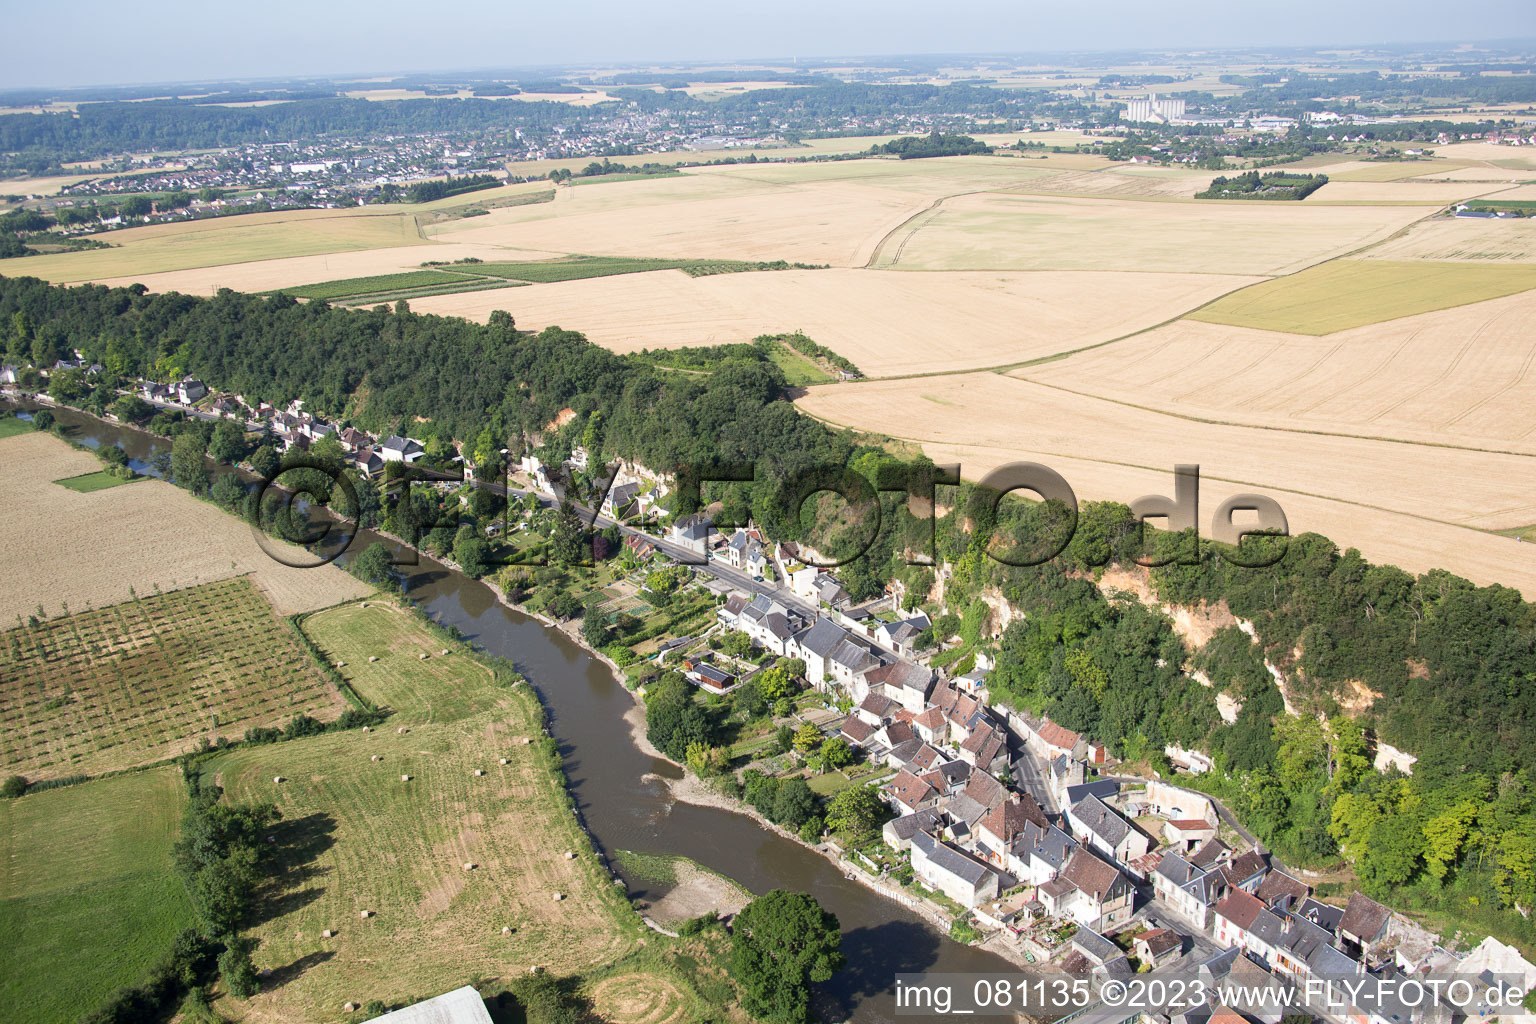 Saint-Rimay dans le département Loir et Cher, France vue d'en haut